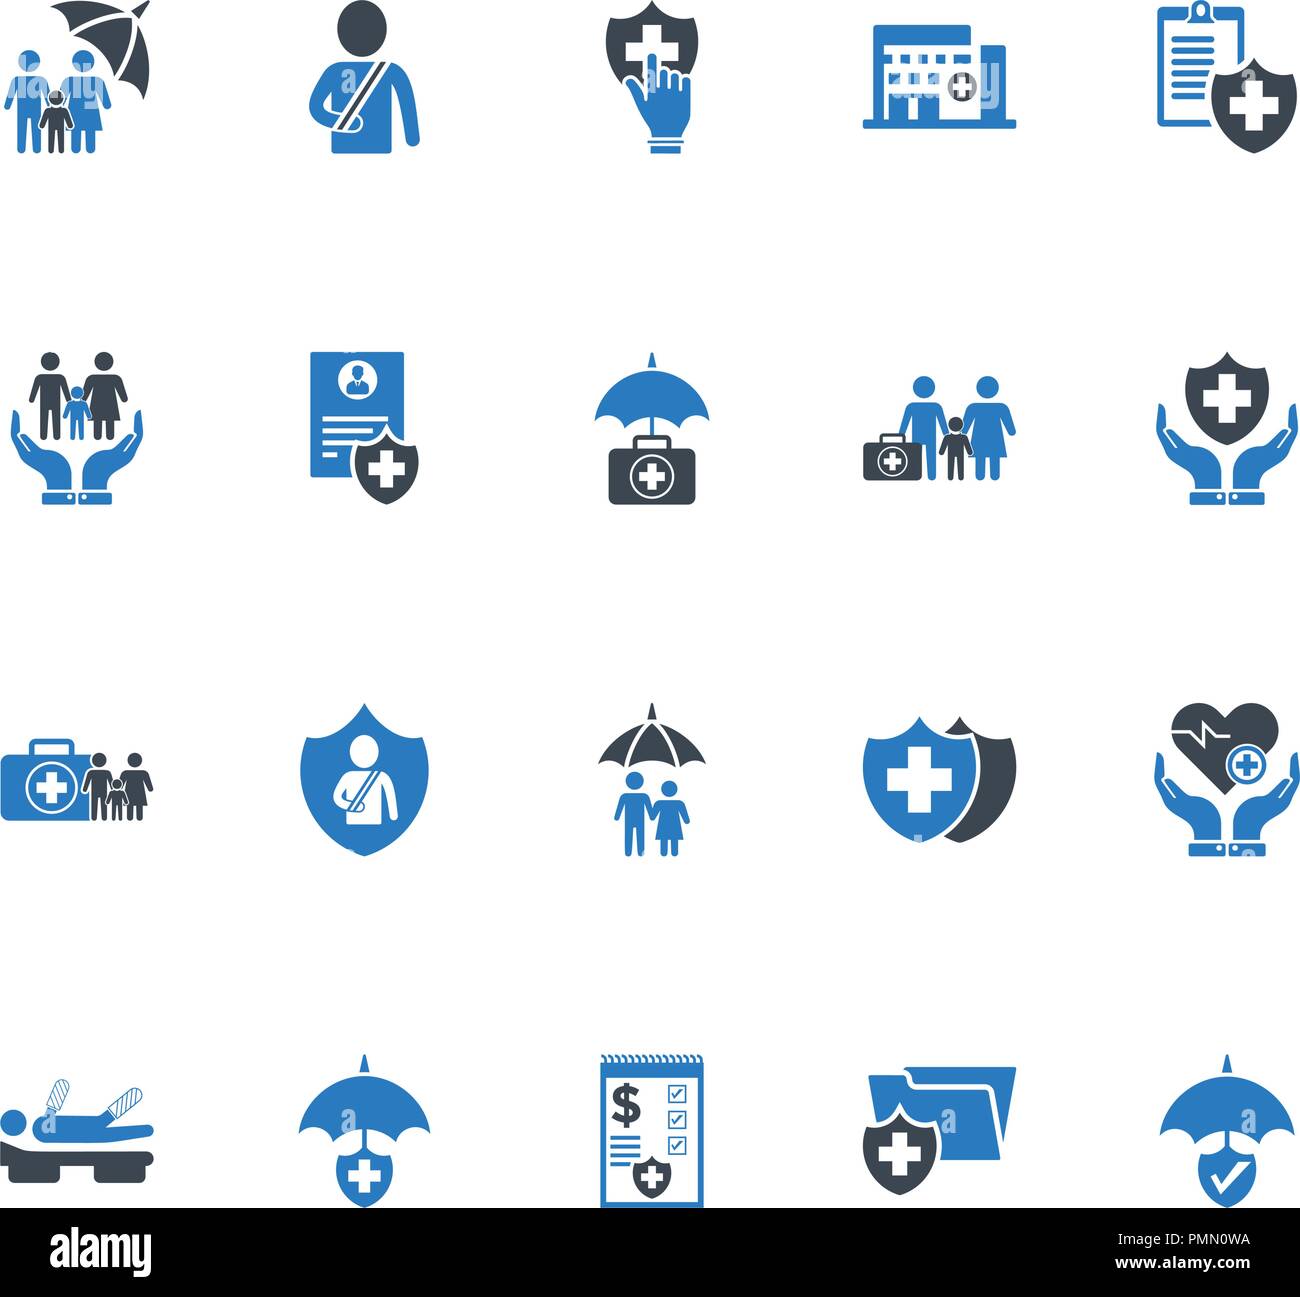 Krankenversicherung Icons Set - Blau Stock Vektor